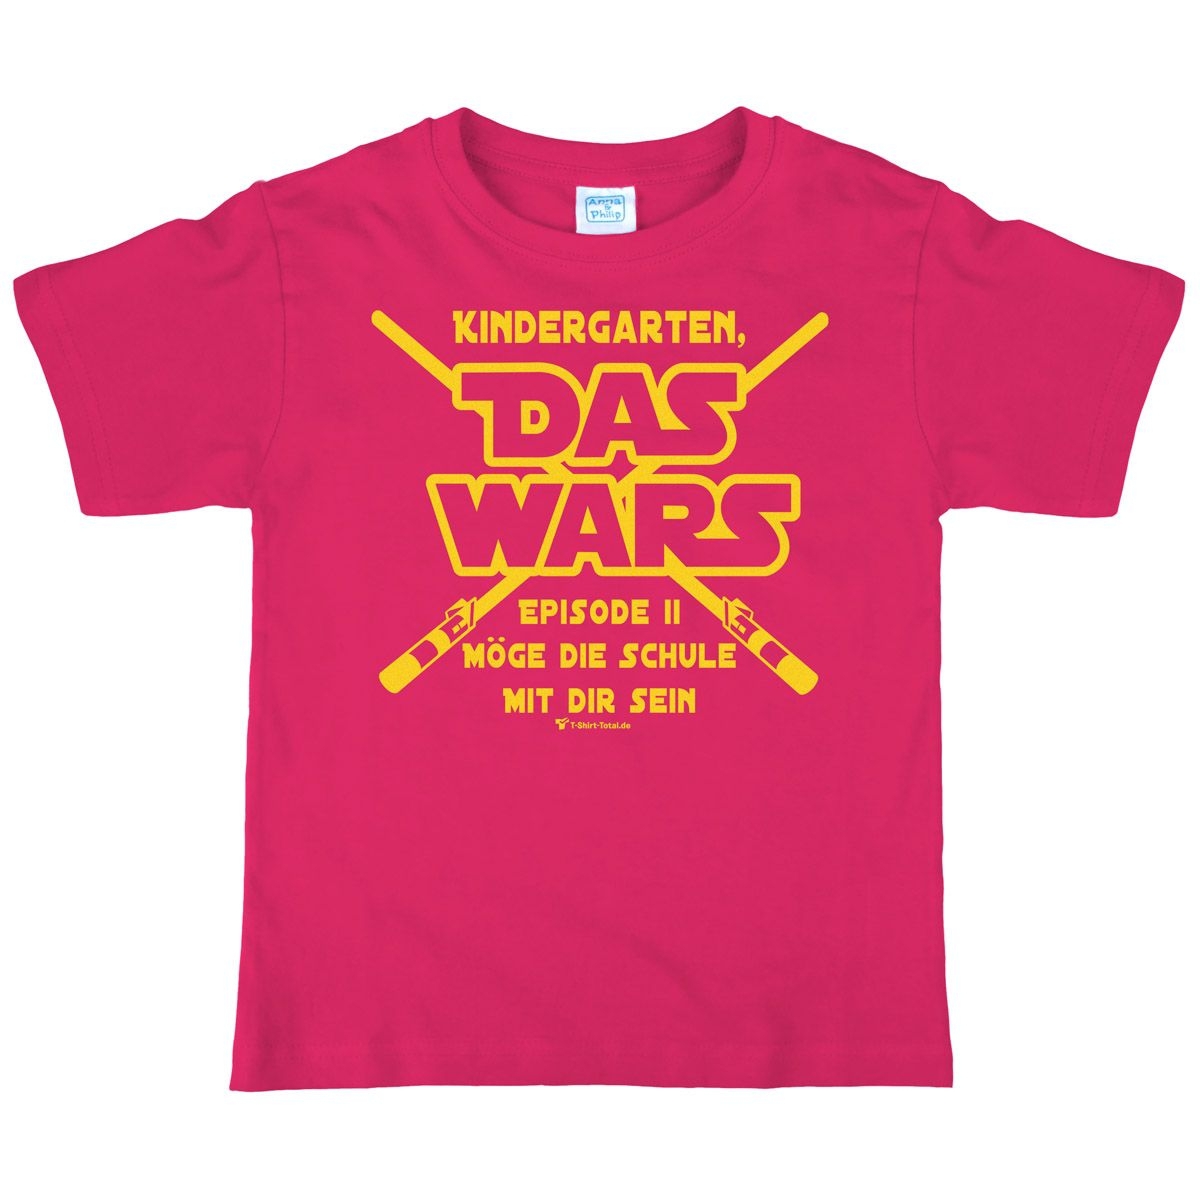 Das wars Kindergarten Kinder T-Shirt mit Namen pink 122 / 128